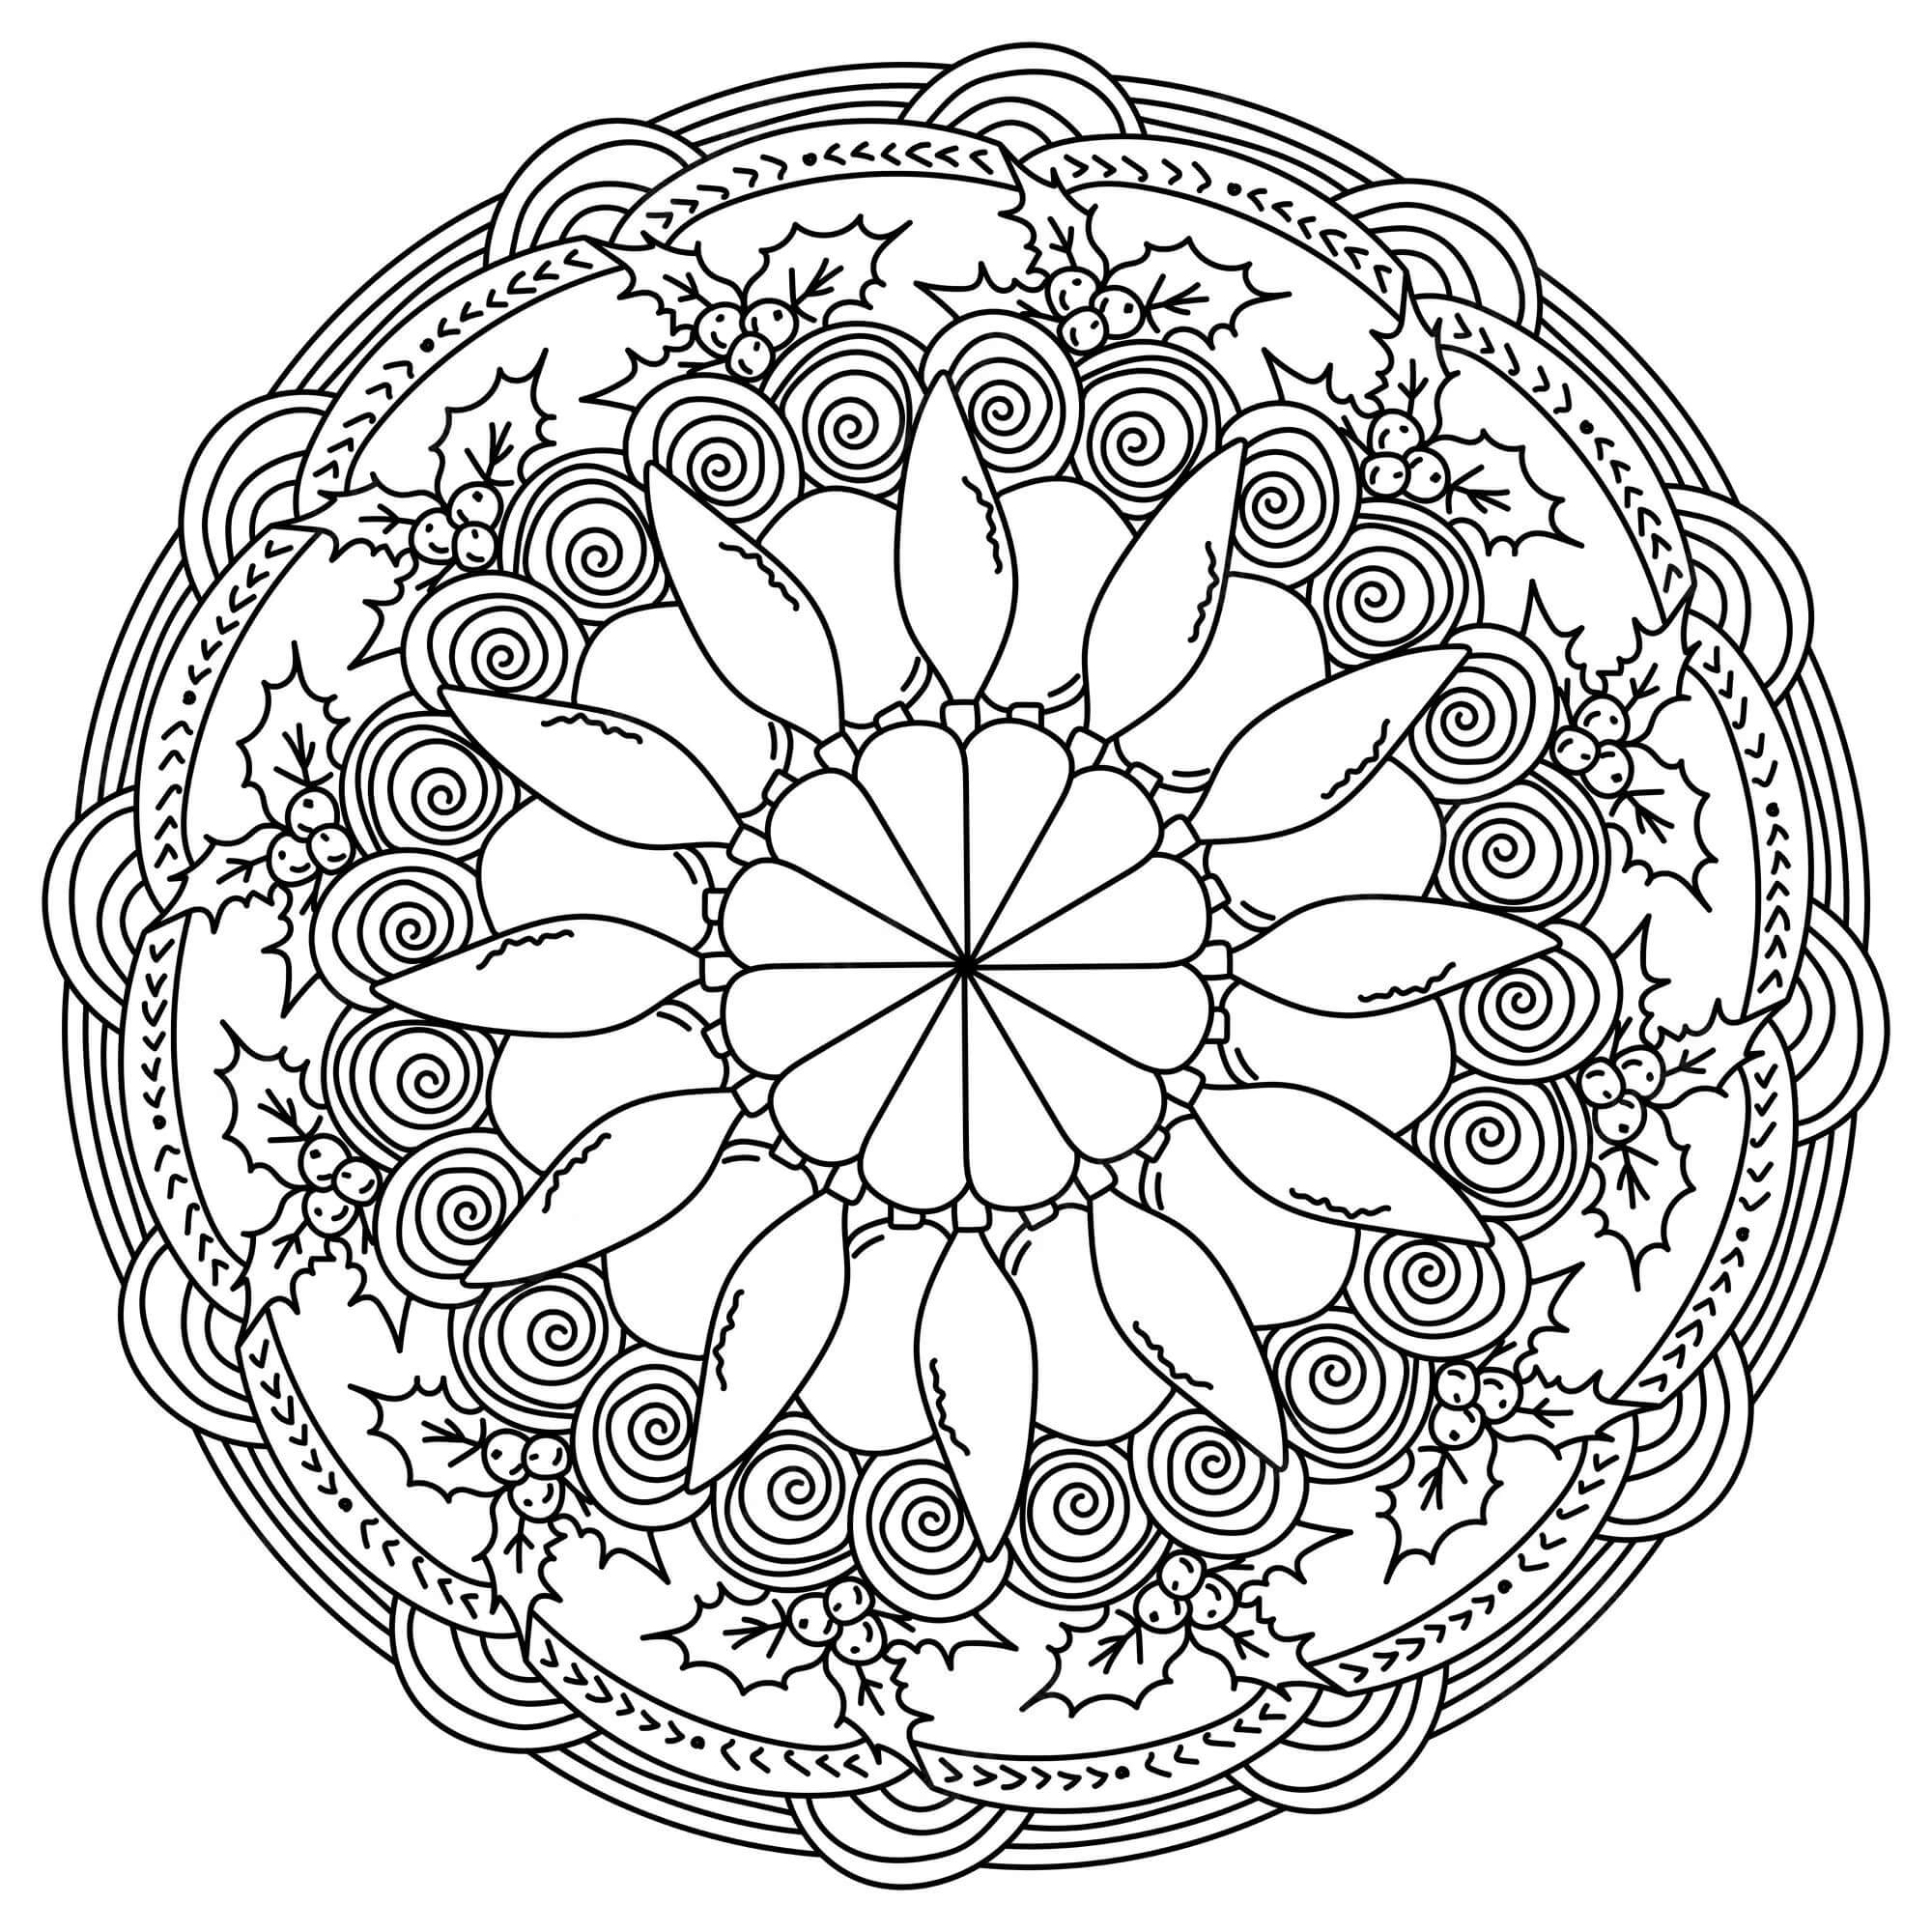 Mandala Christmas Coloring Page - Sheet 10 Mandalas